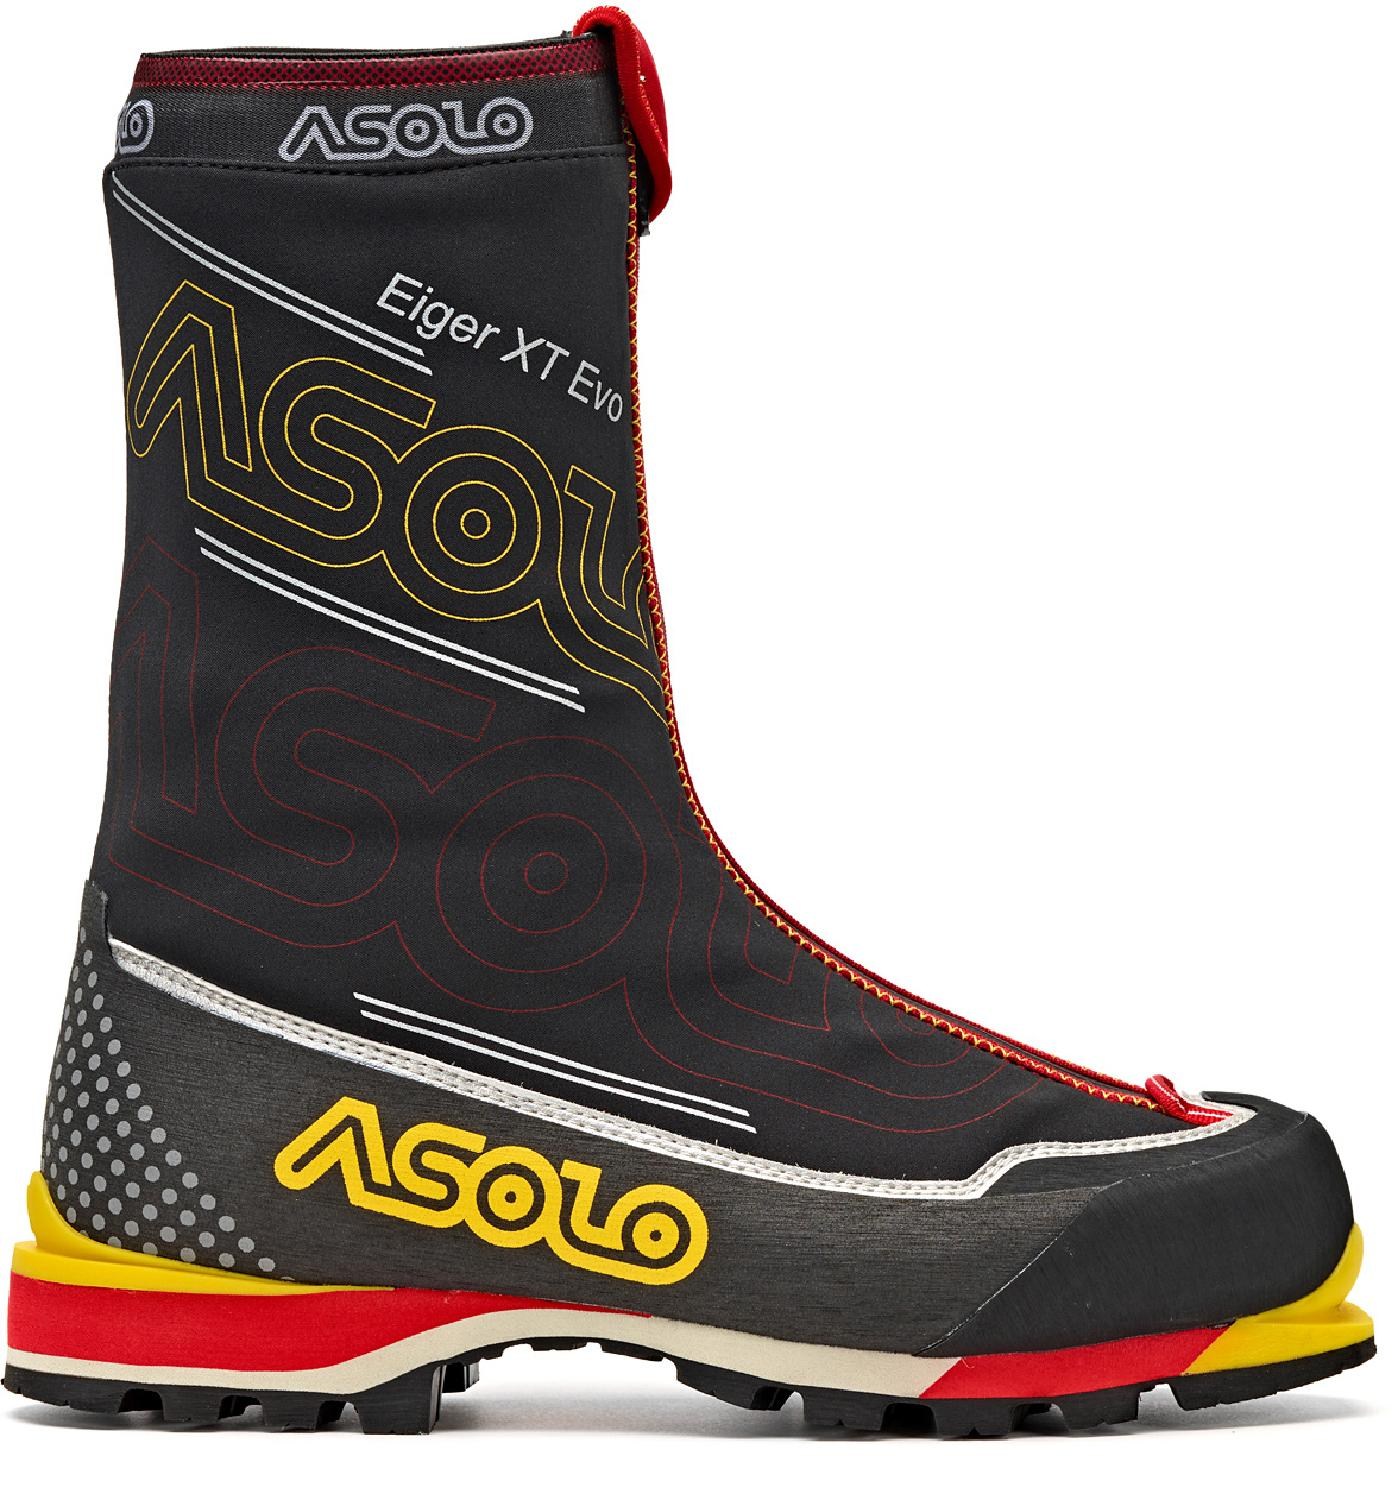 Альпинистские ботинки Eiger XT GV Evo — мужские Asolo, черный